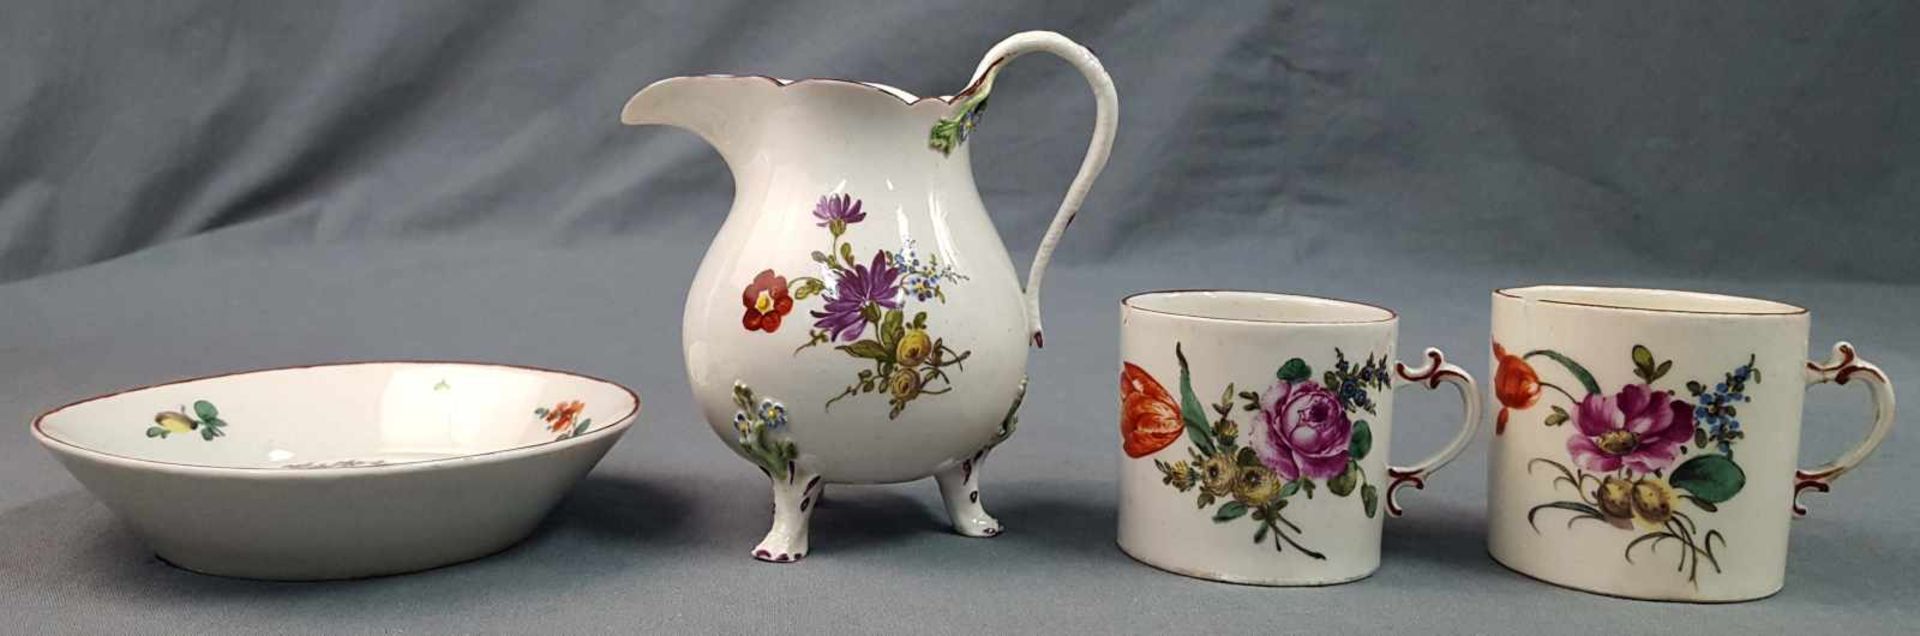 Ludwigsburg porcelain. 2 cups, saucer, milk jug. - Image 2 of 8